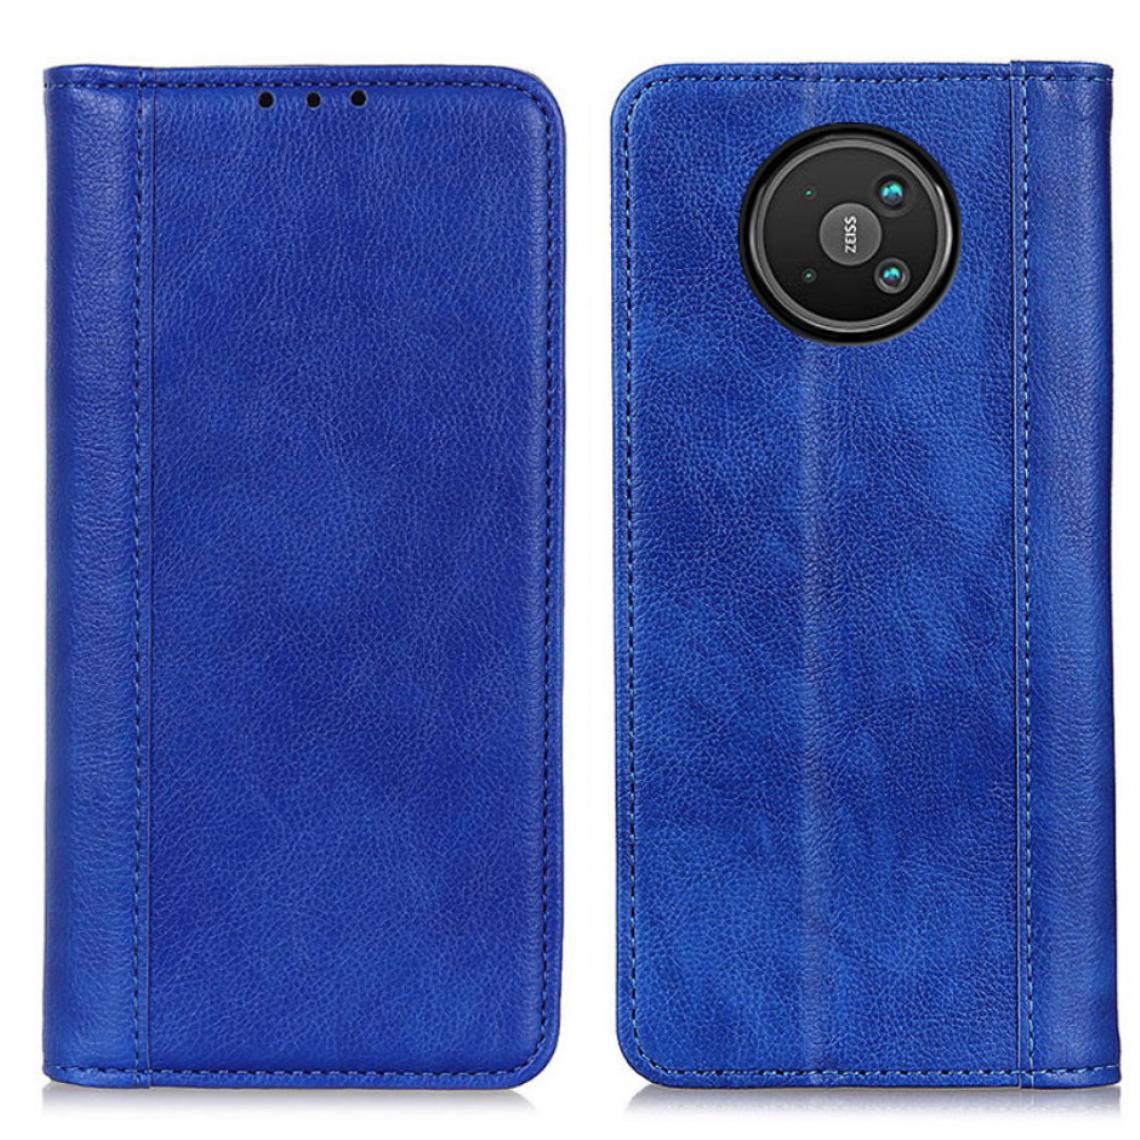 Other - Etui en PU Texture Litchi auto-absorbée avec support bleu pour Nokia 8 V 5G - Coque, étui smartphone